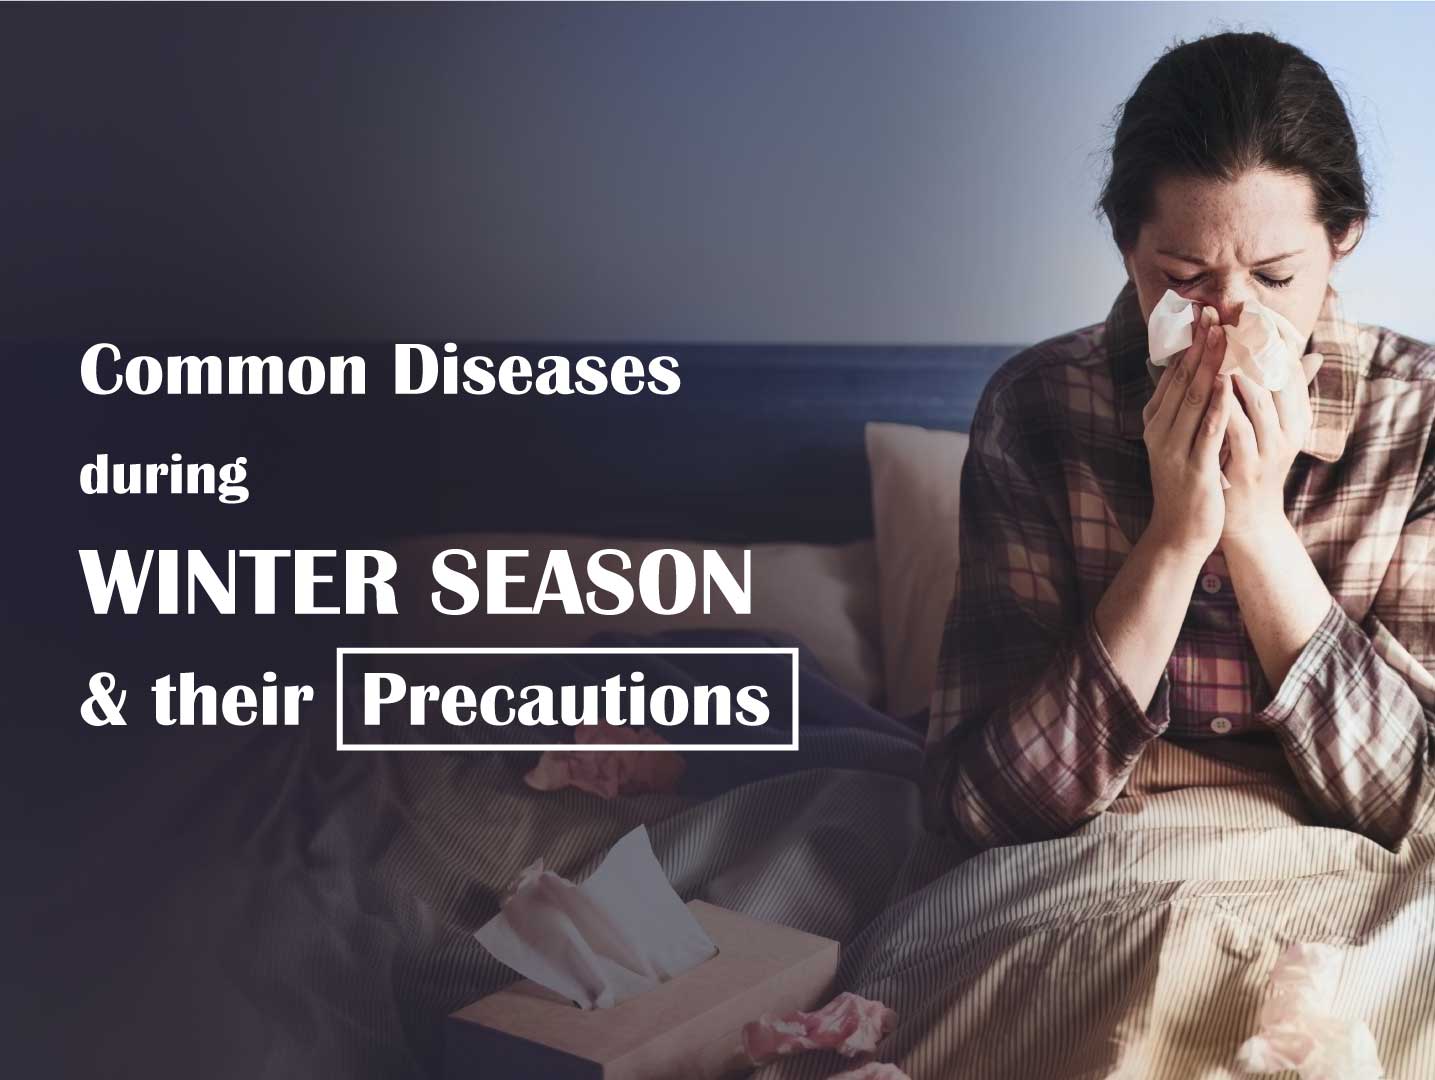 Winter Diseases